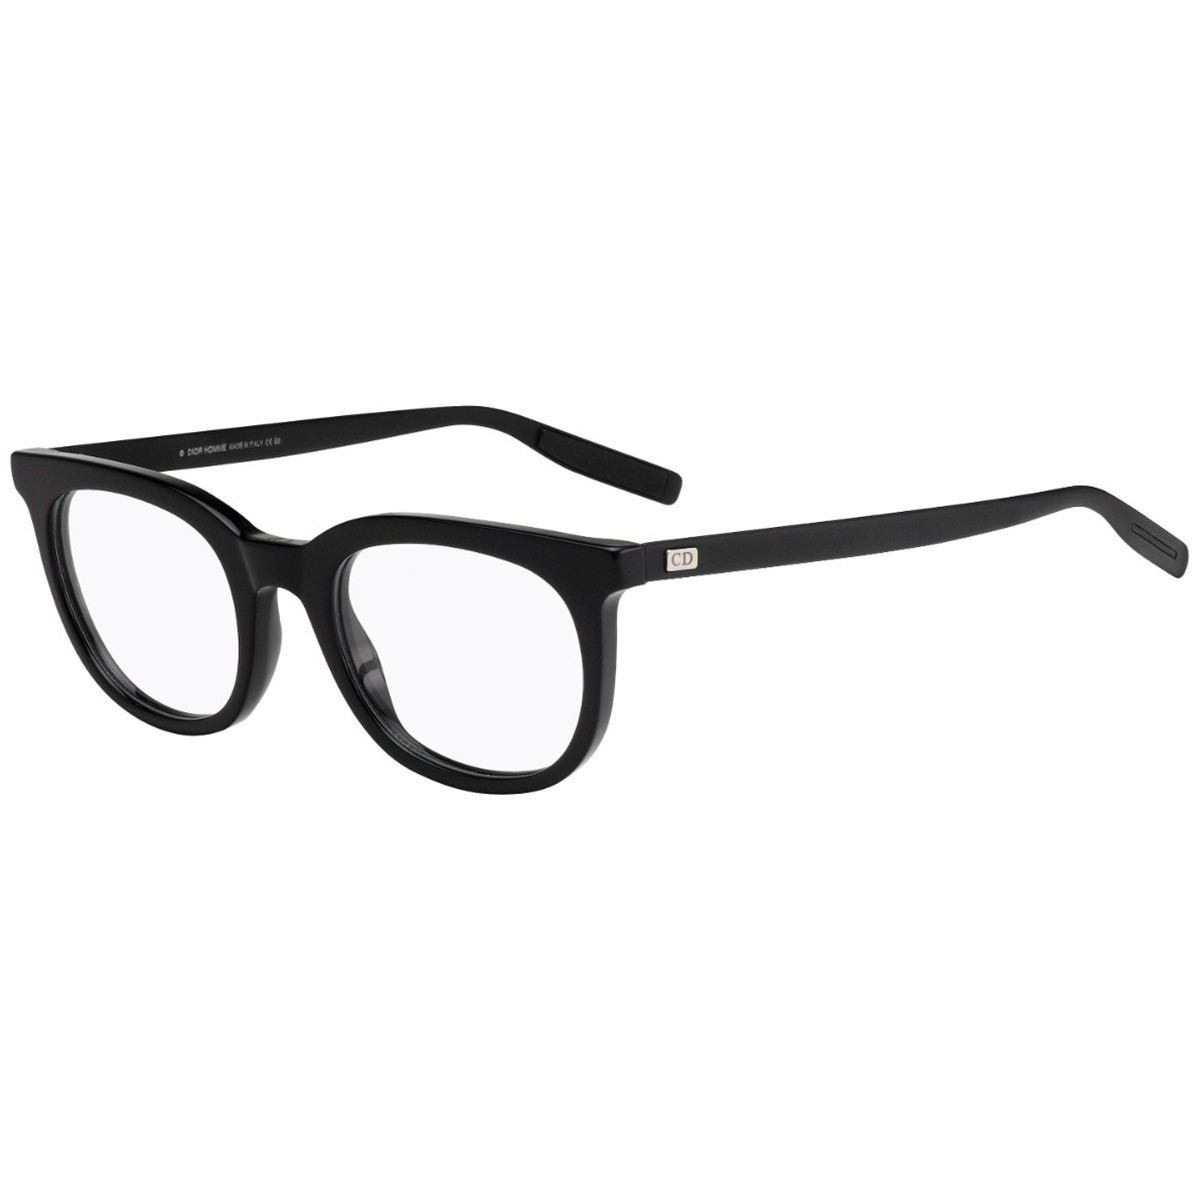 Dior Blacktie 217 | Men's eyeglasses